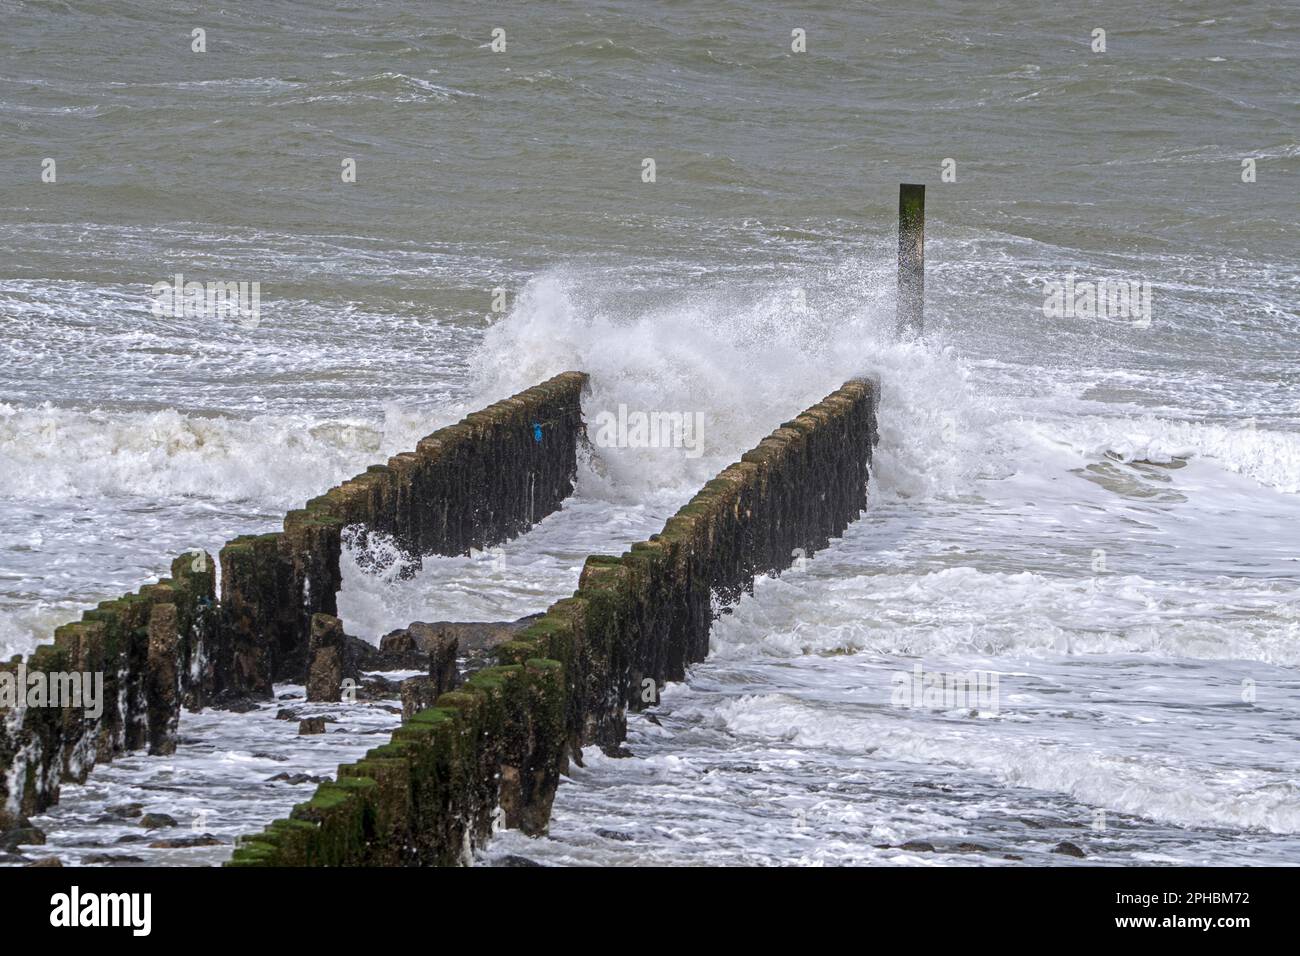 Wellen, die in Holz-Gryne/Wellenbrecher stürzen, um die Erosion des Strandes während des Wintersturms entlang der Nordseeküste in Zeeland, Niederlande, zu vermeiden Stockfoto